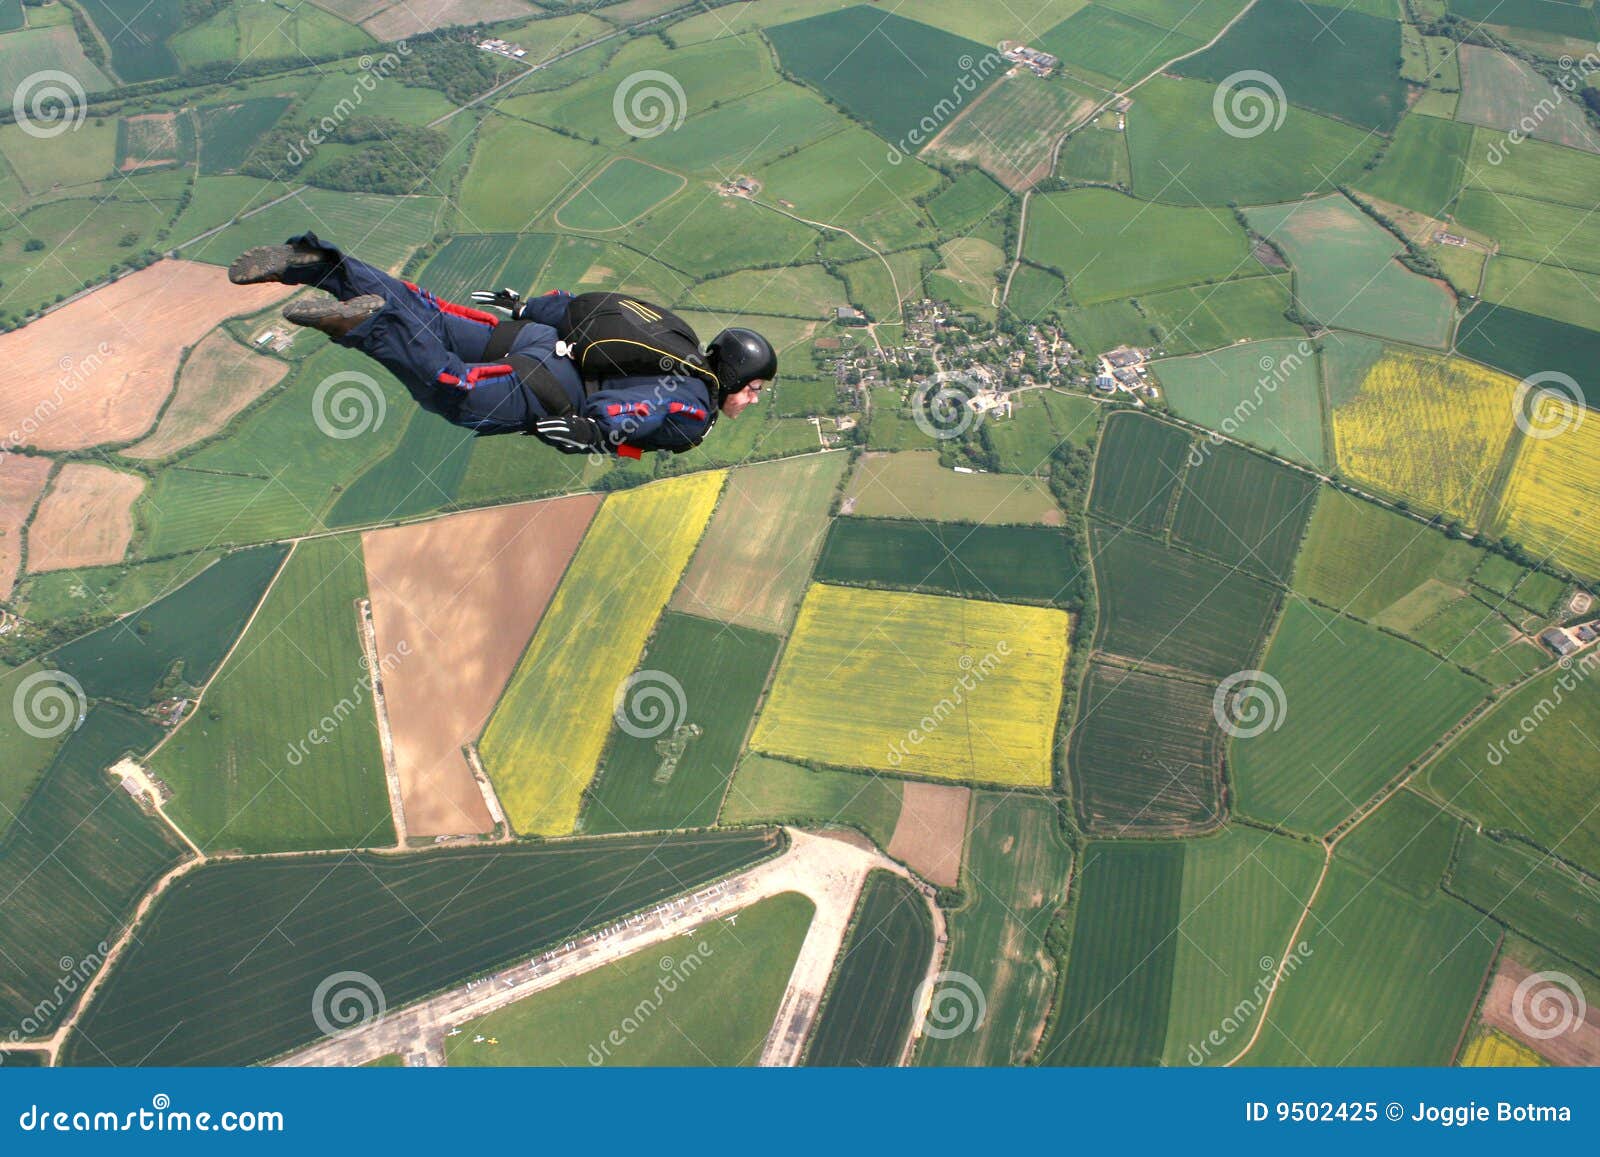 skydiver flies past cameraman